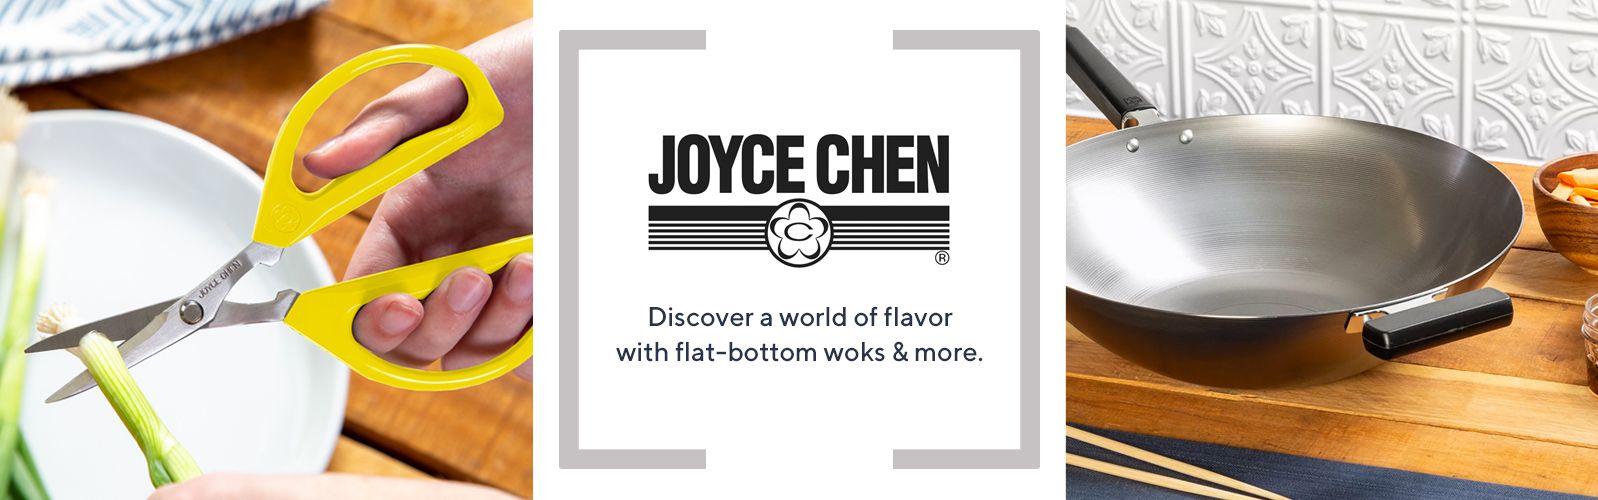 Joyce Chen Unlimited Scissors Yellow